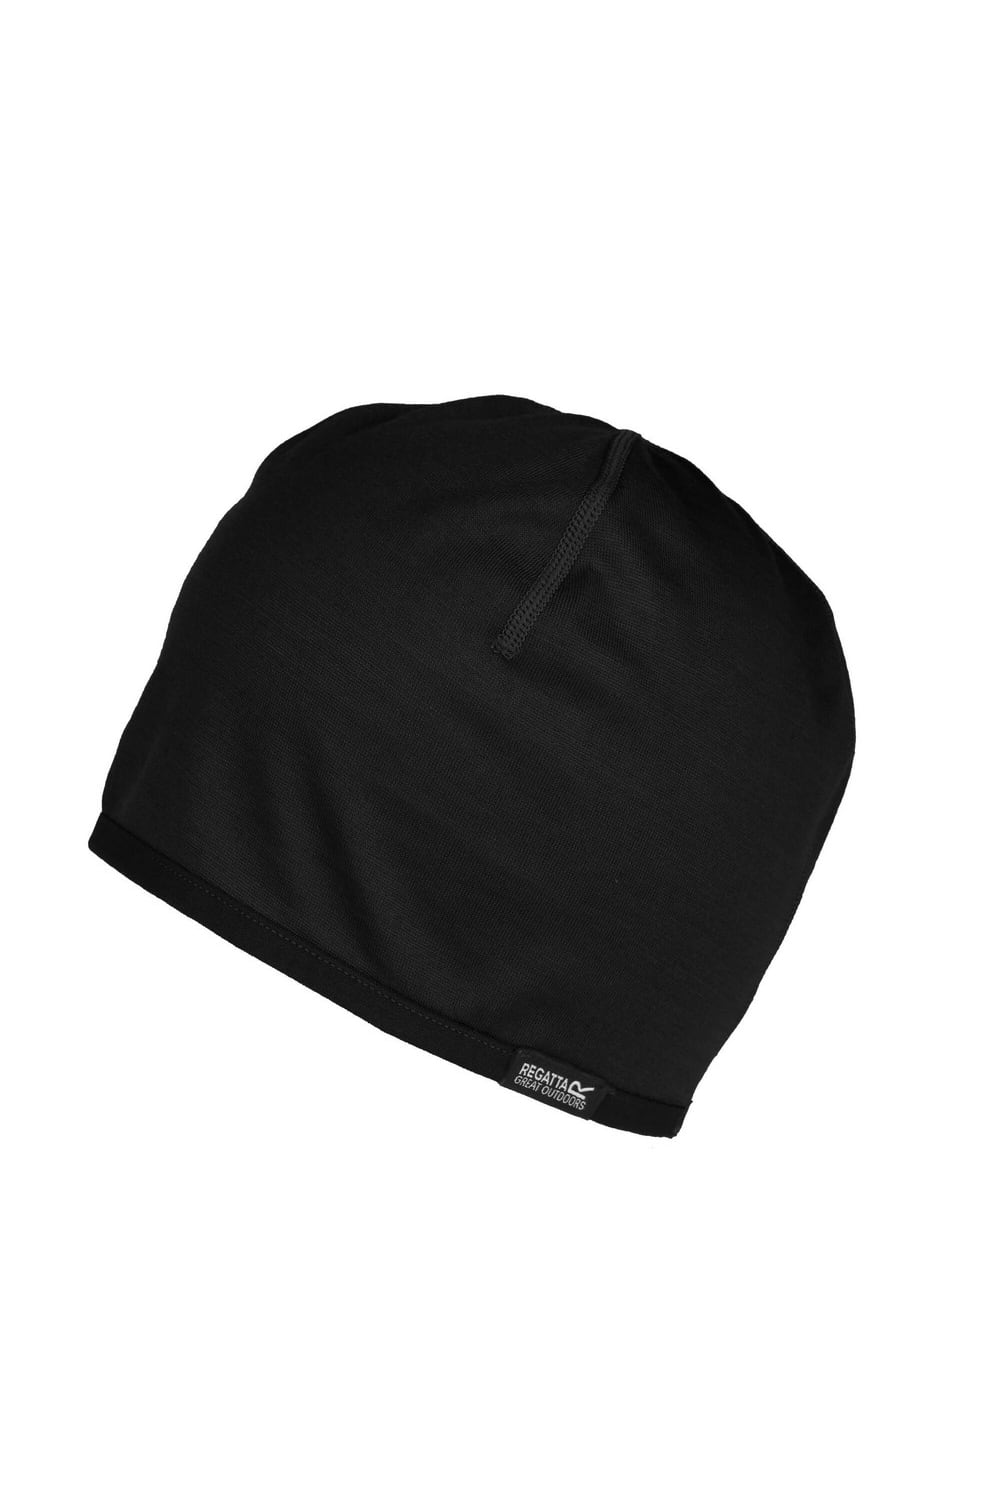 Unisex Adult Merino Wool Hat - Black